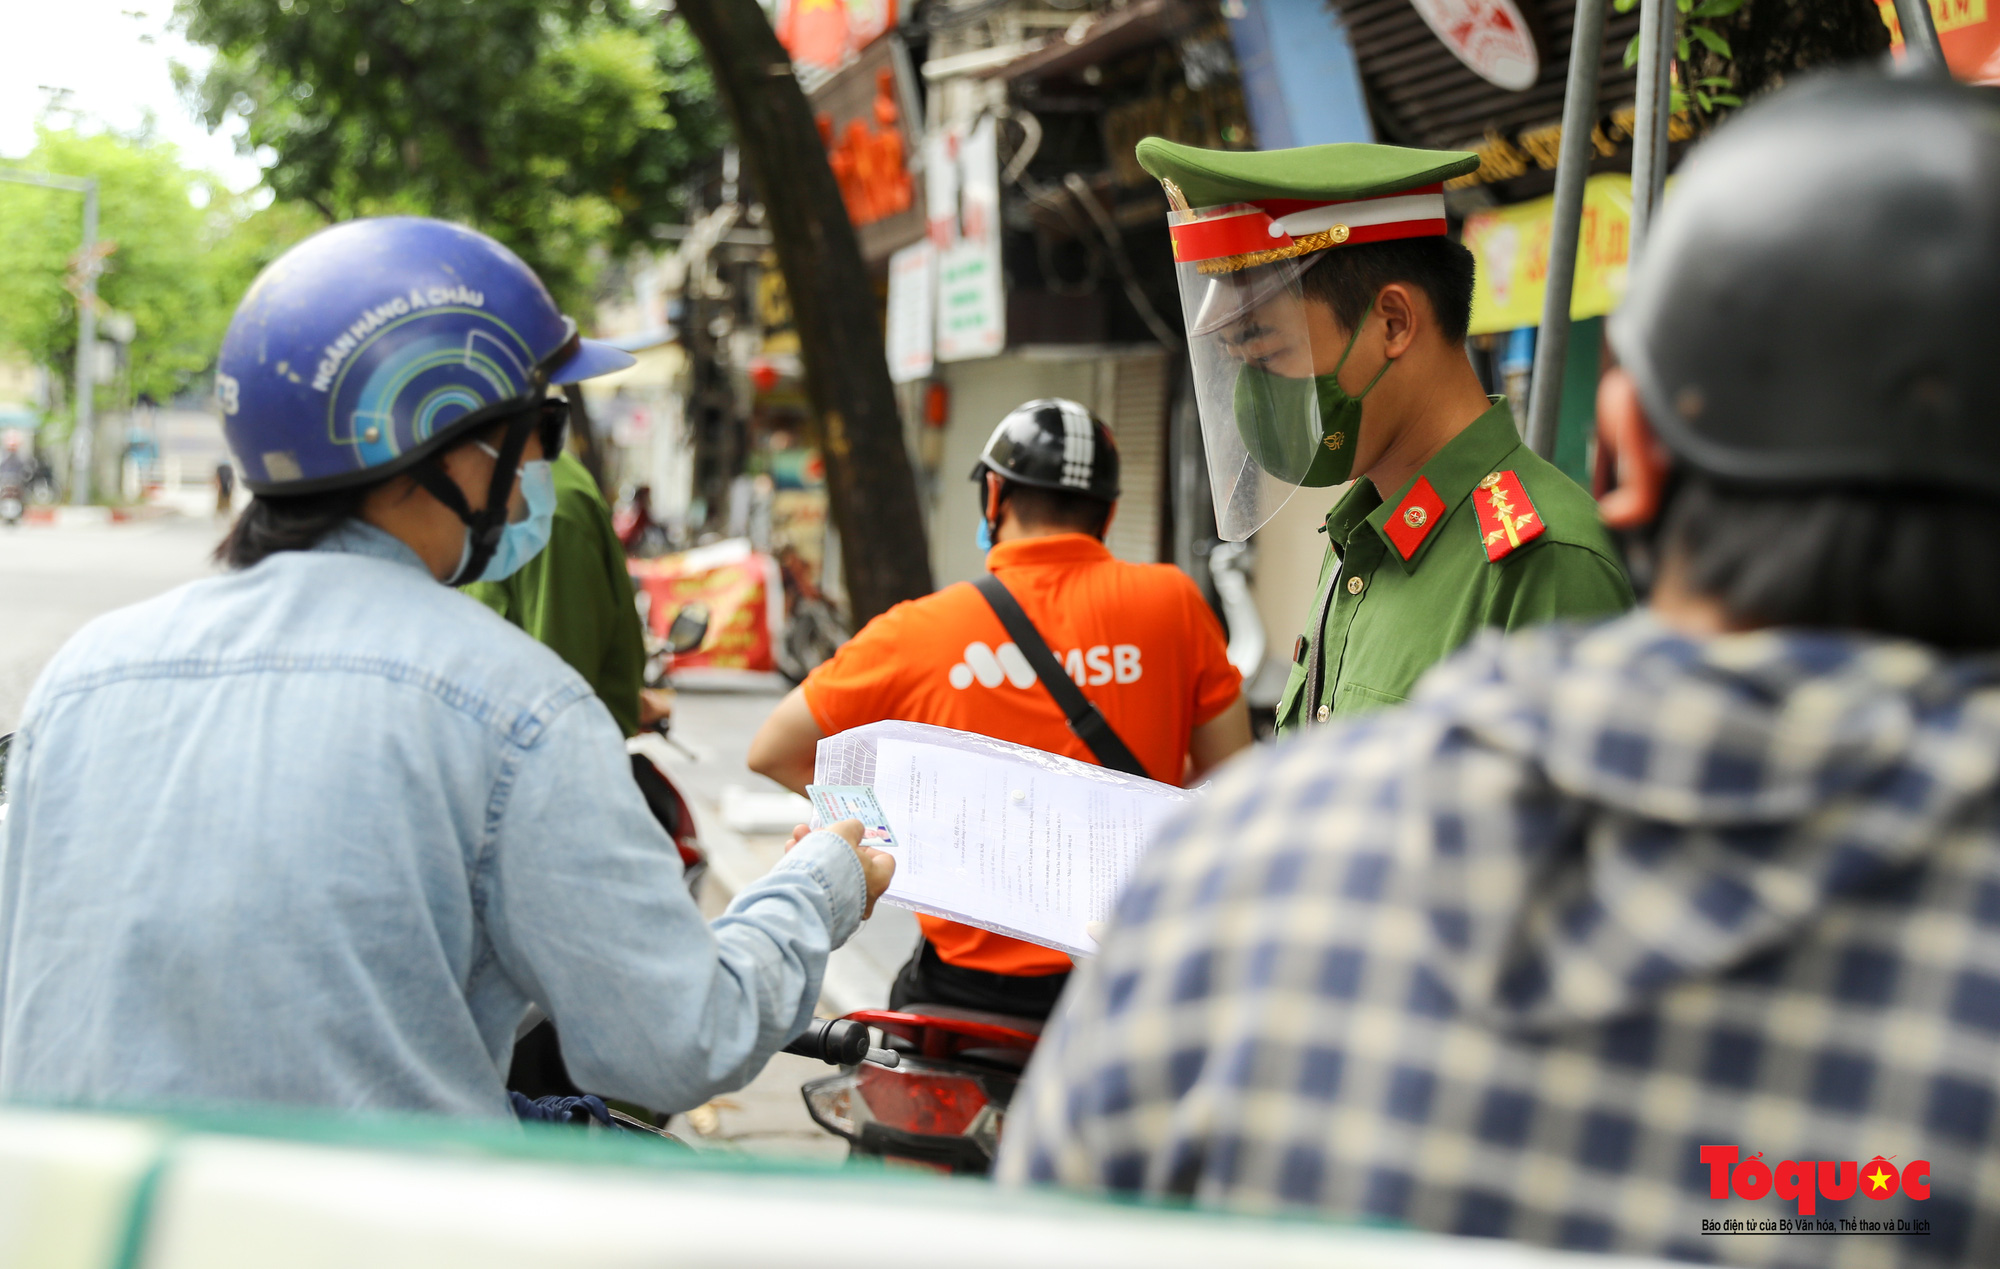 Công an quận Hoàn Kiếm triển khai tổ công tác đặc biệt kiểm soát giấy đi đường, nhiều trường hợp quay đầu bỏ chạy - Ảnh 5.